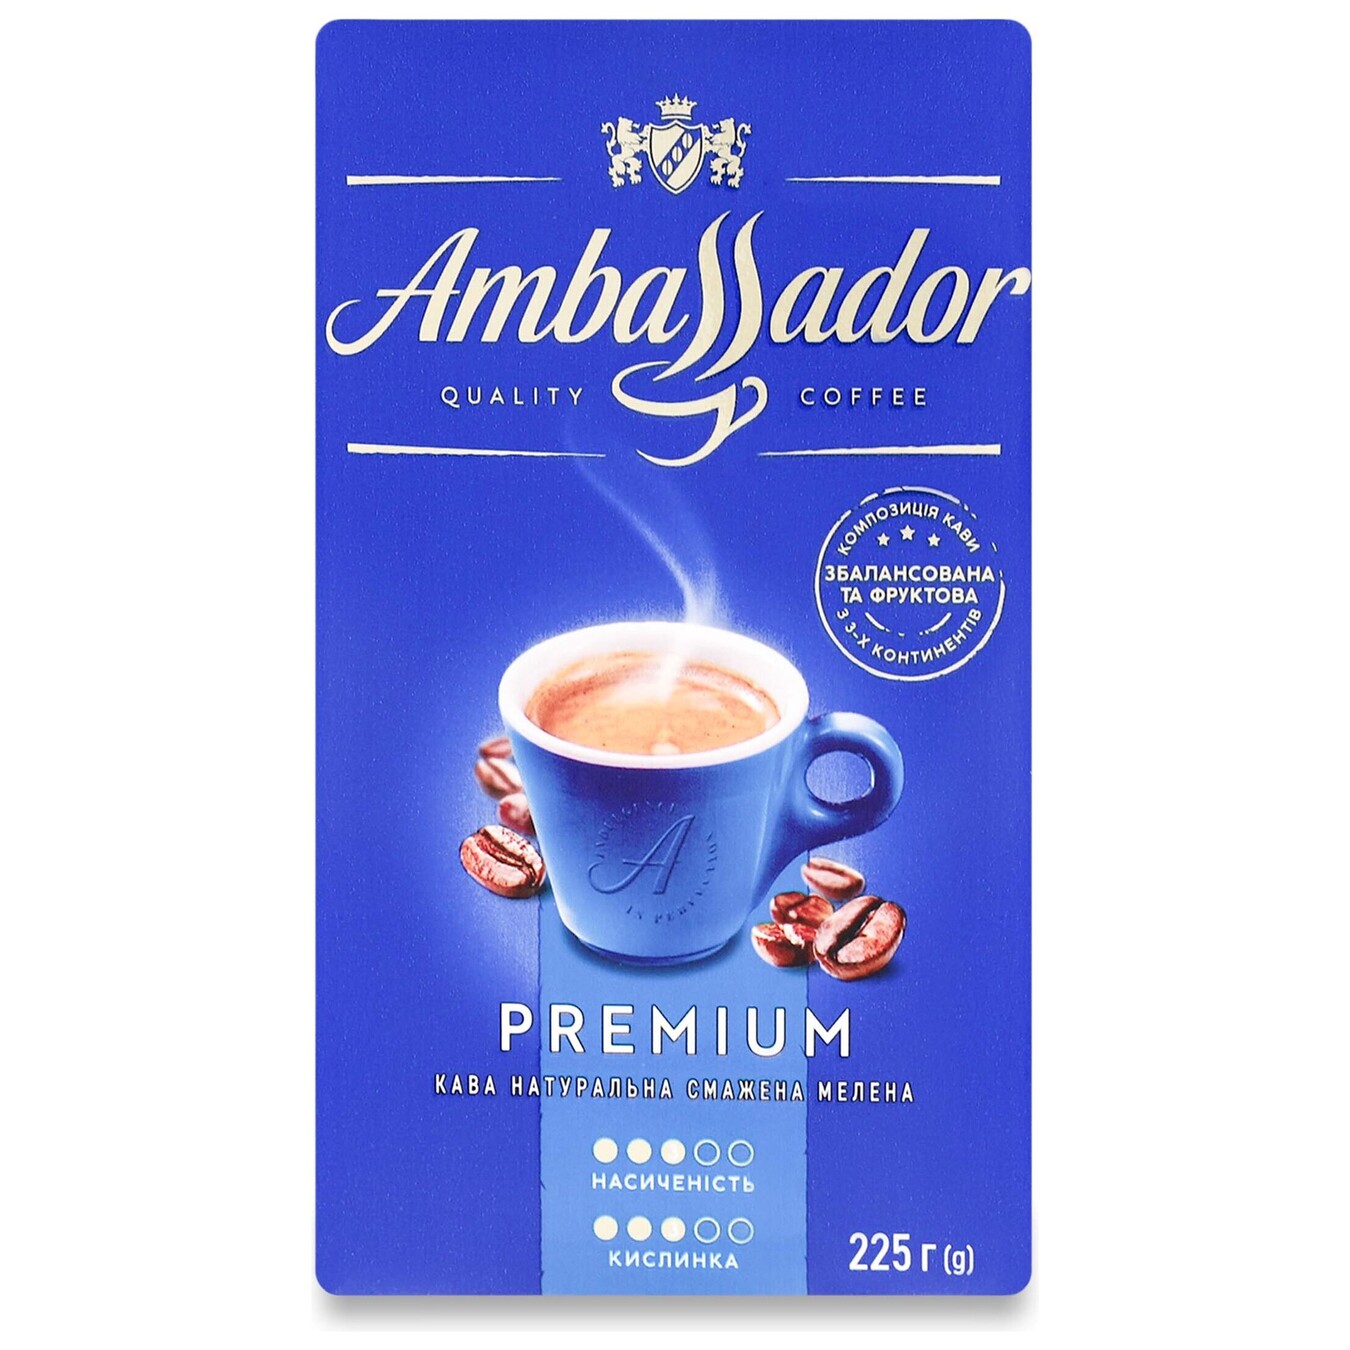 Кава Ambassador Premium натуральна смажена мелена в/у 225г